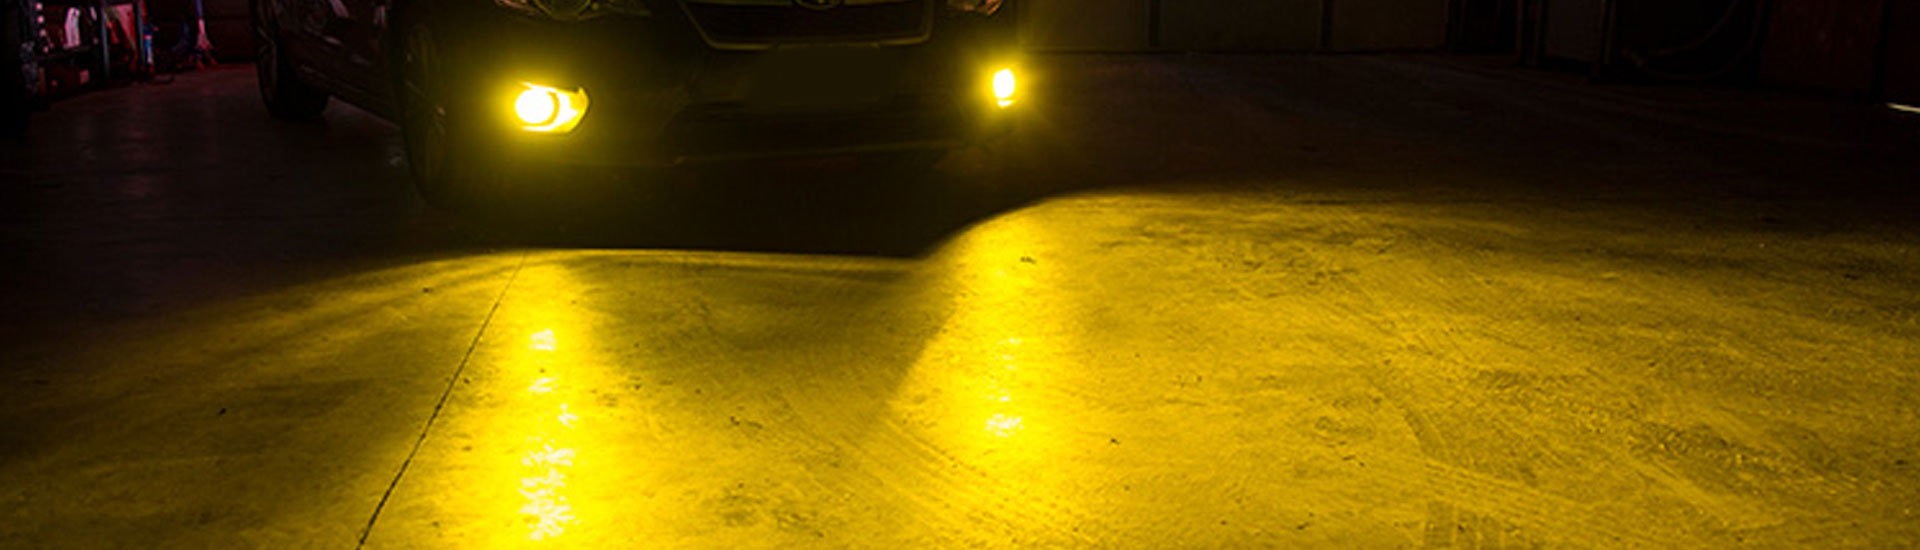 Chevrolet Astro Fog Light Tint Covers